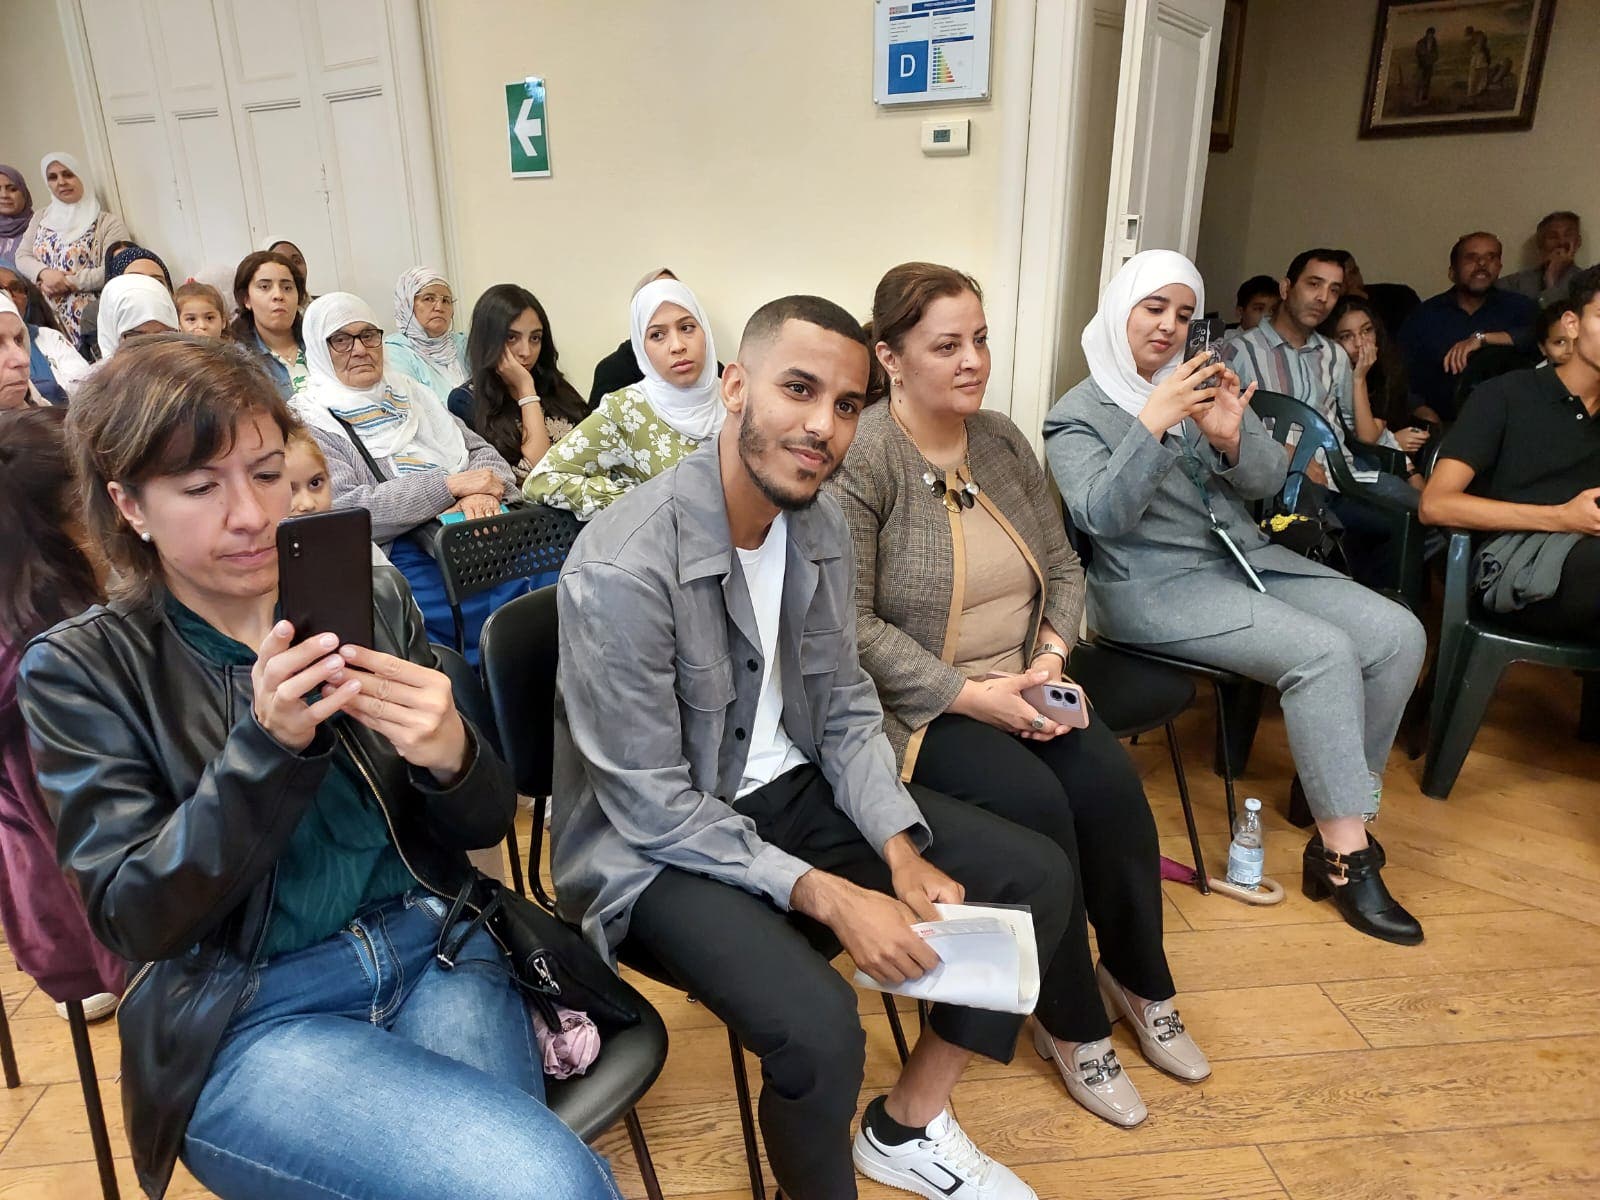 La communauté marocaine d’Oligo : un modèle d’intégration sociale et une source d’enrichissement culturel